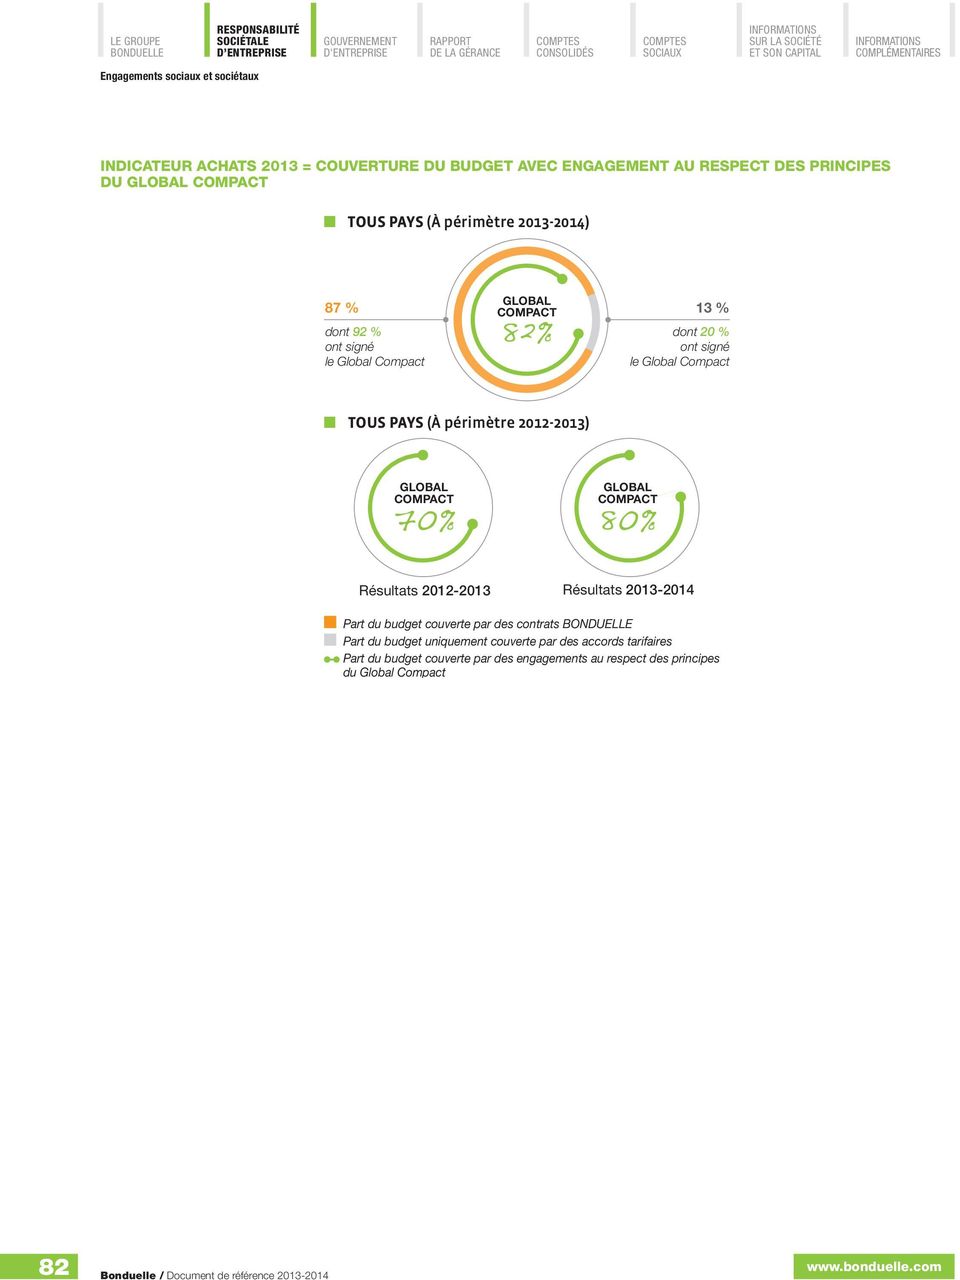 GLOBAL COMPACT 70% GLOBAL COMPACT 80% Résultats 2012-2013 Résultats 2013-2014 Part du budget couverte par des contrats Part du budget